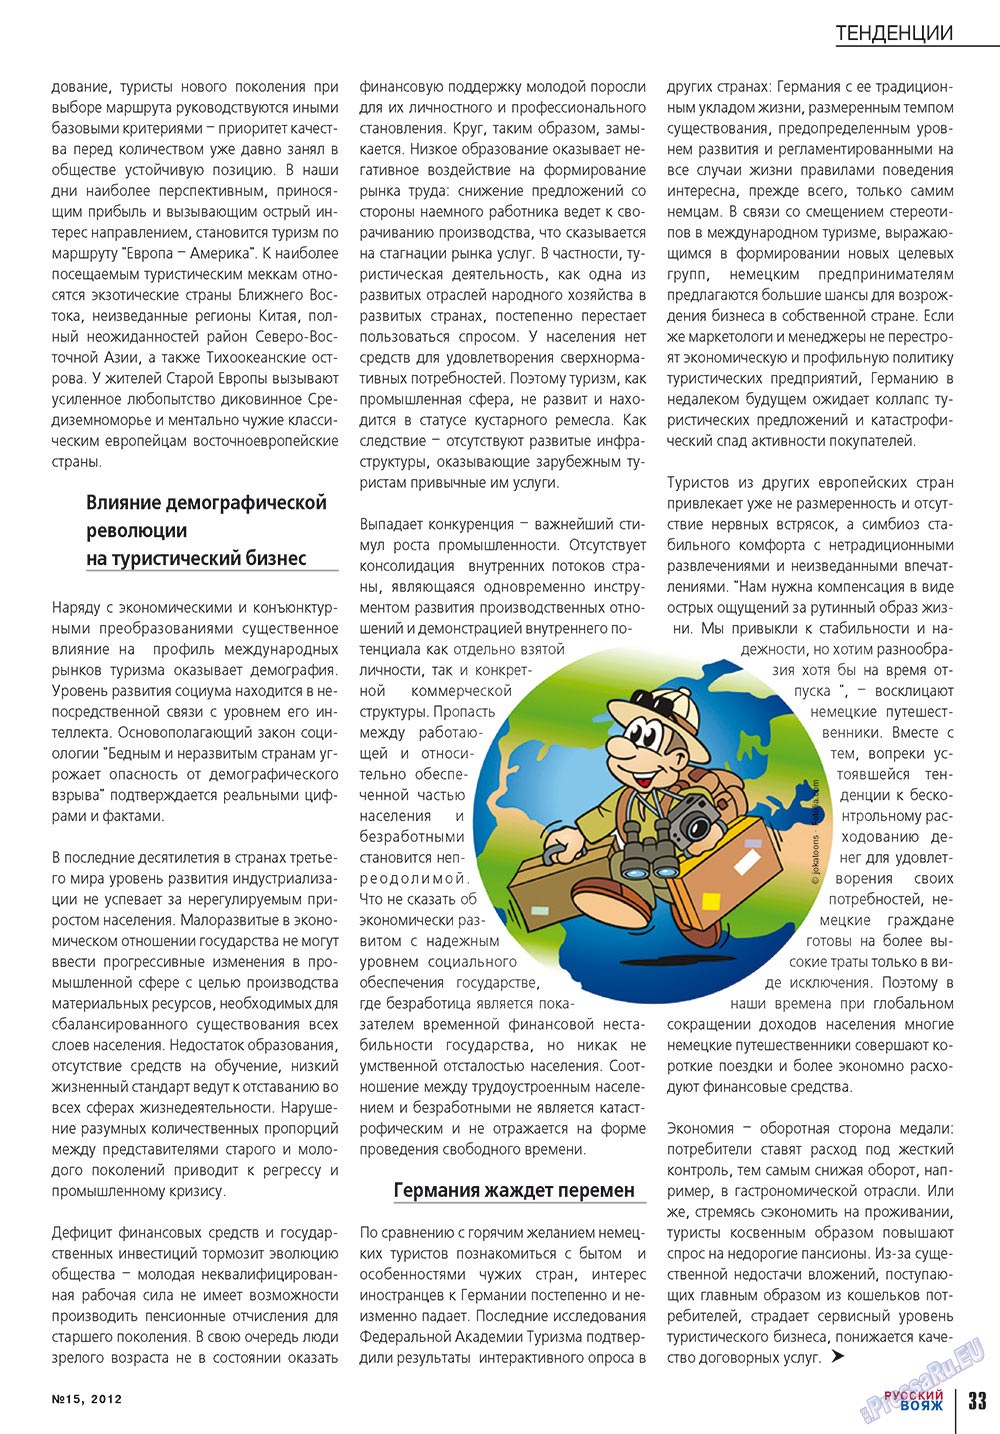 Русский вояж, журнал. 2012 №15 стр.33